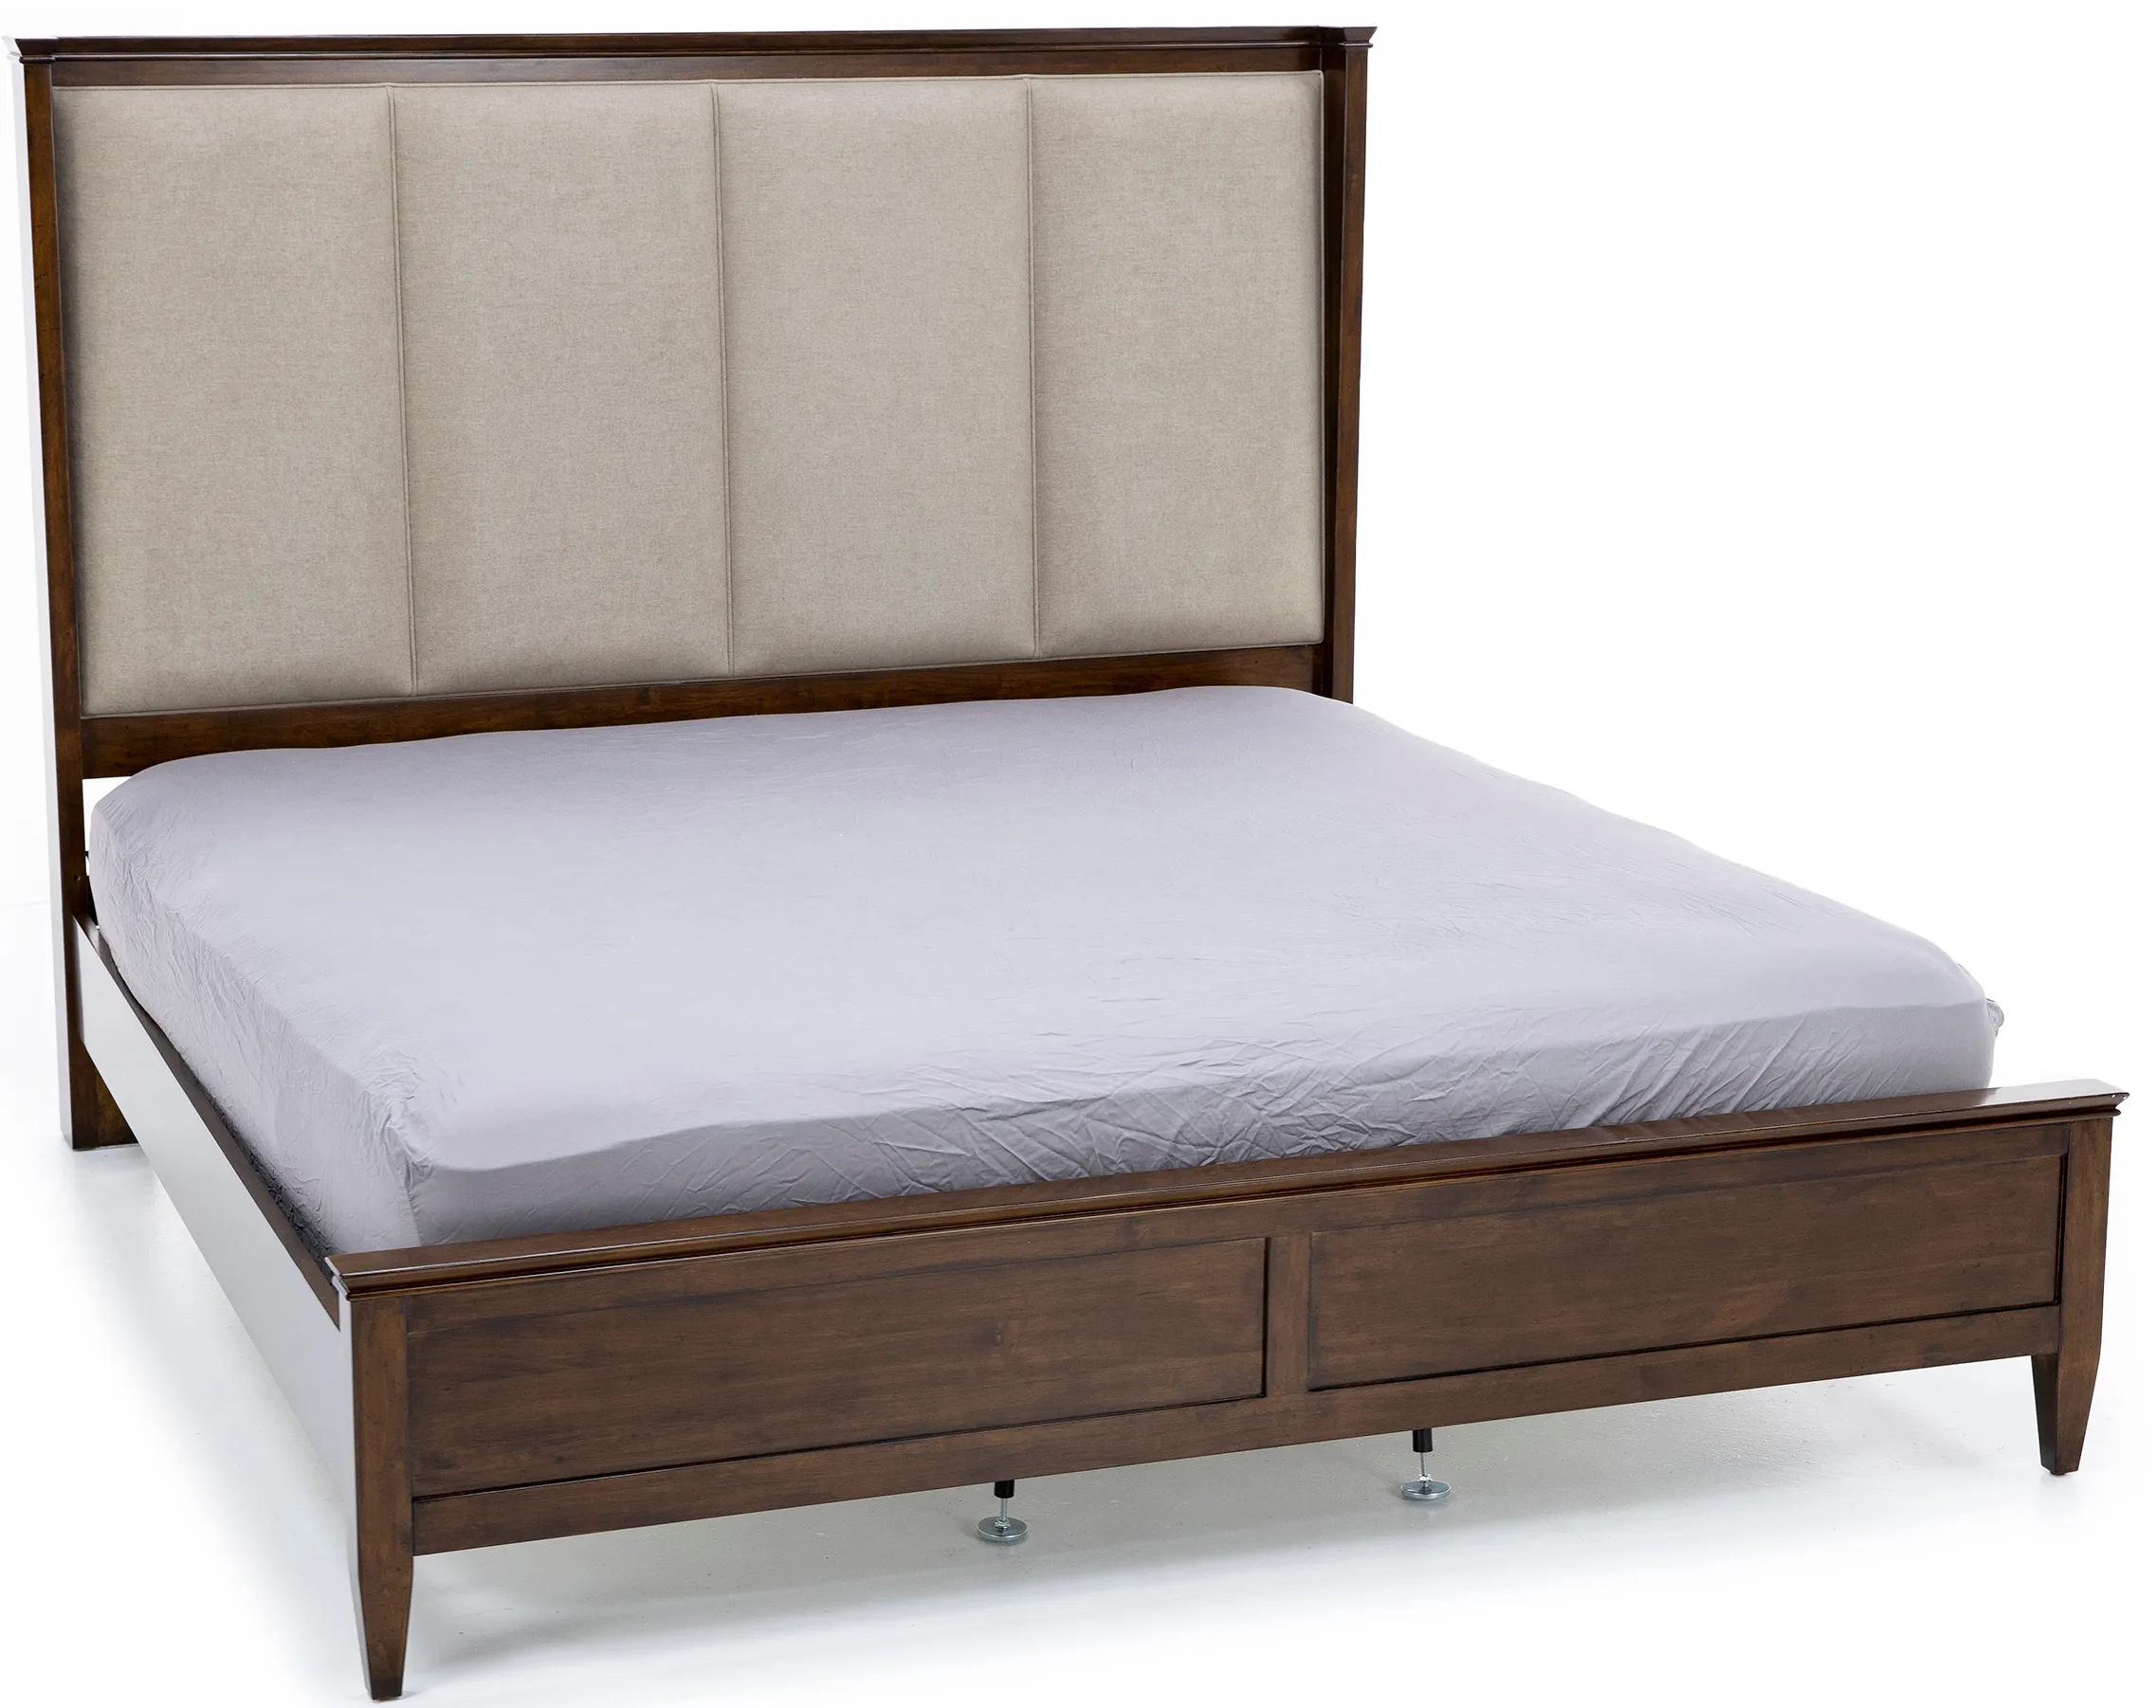 Elise King Upholstered Shelter Bed